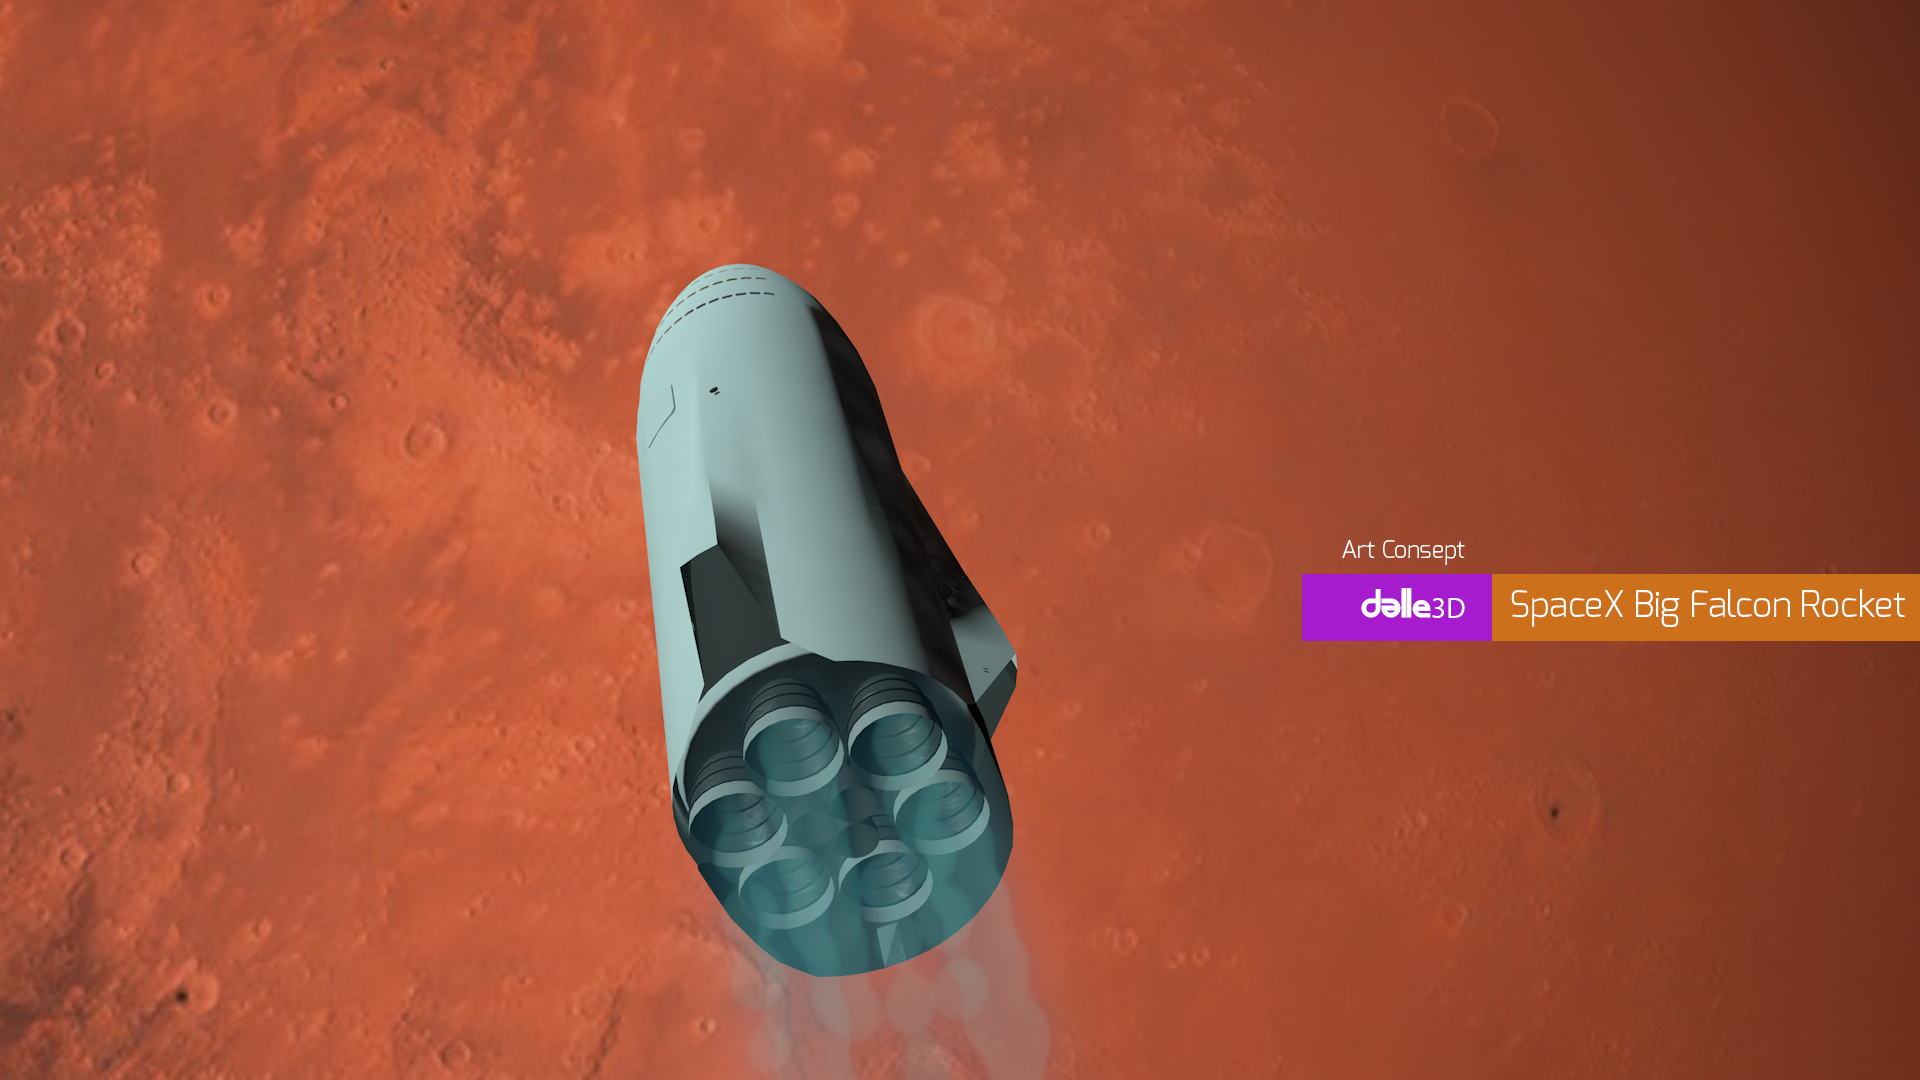 स्पेसएक्स बिग फाल्कन रॉकेट Cinema 4d maxwell render में प्रस्तुत छवि